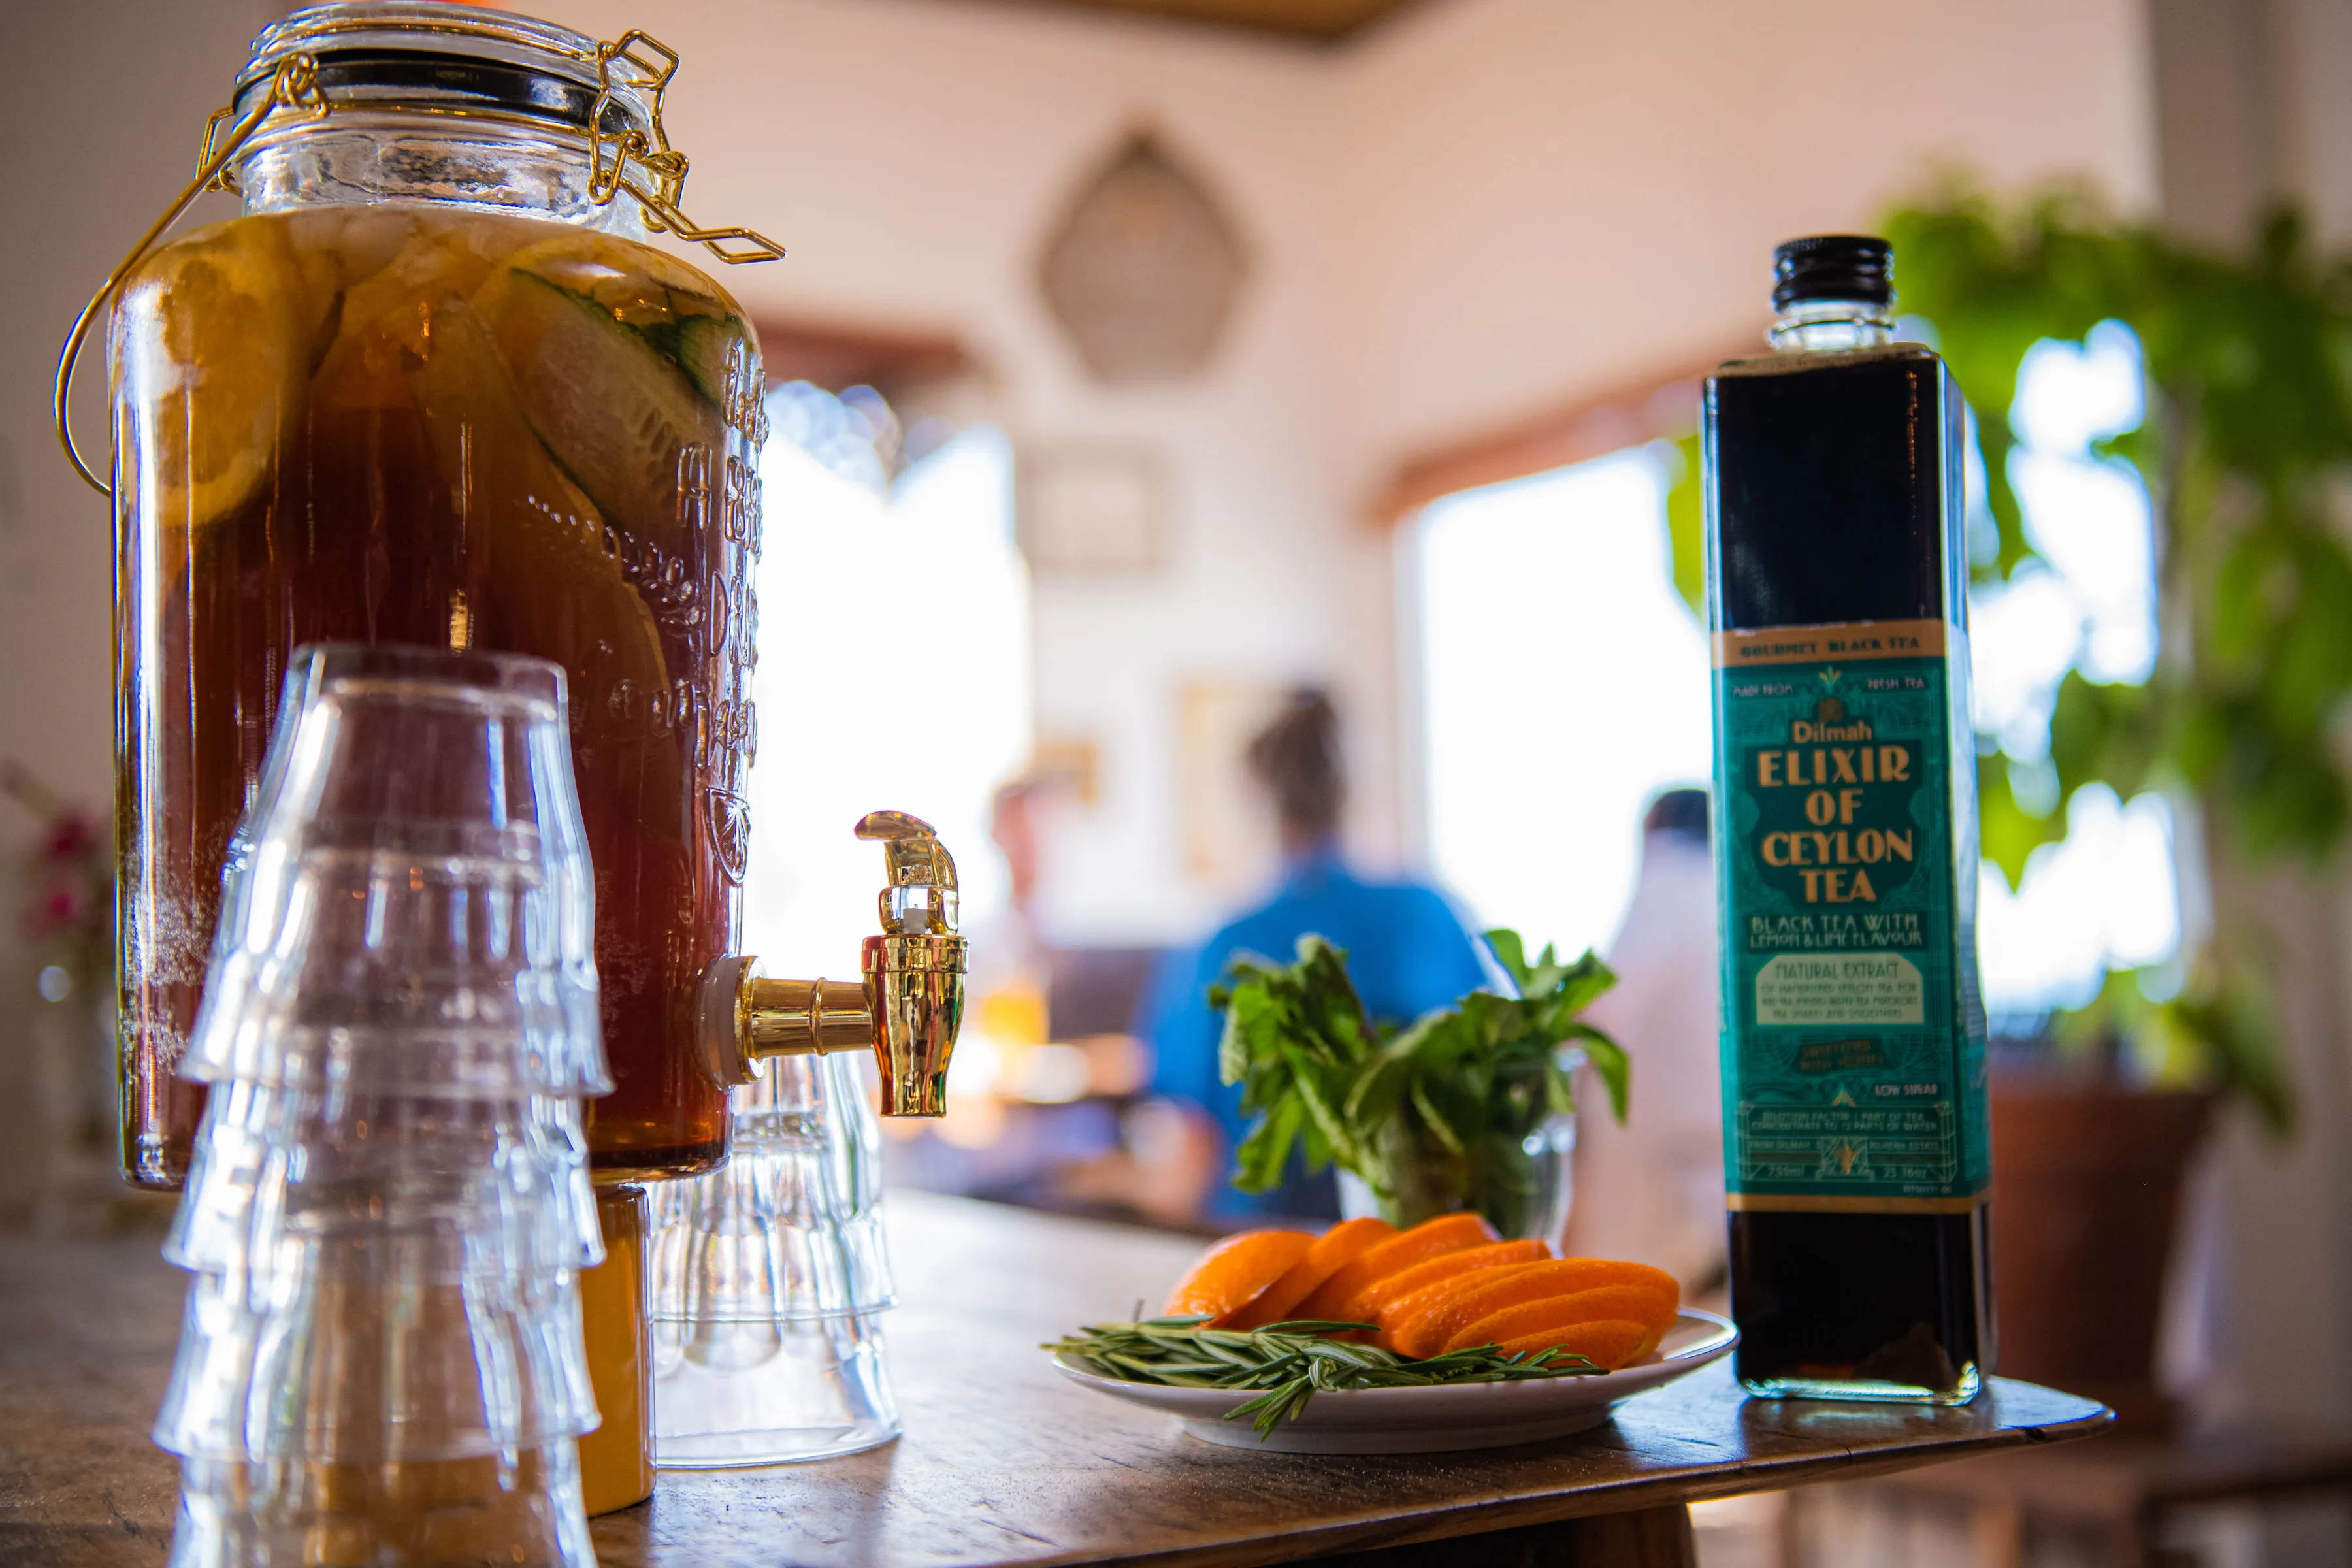 Elixir of Ceylon tea served at a restaurant